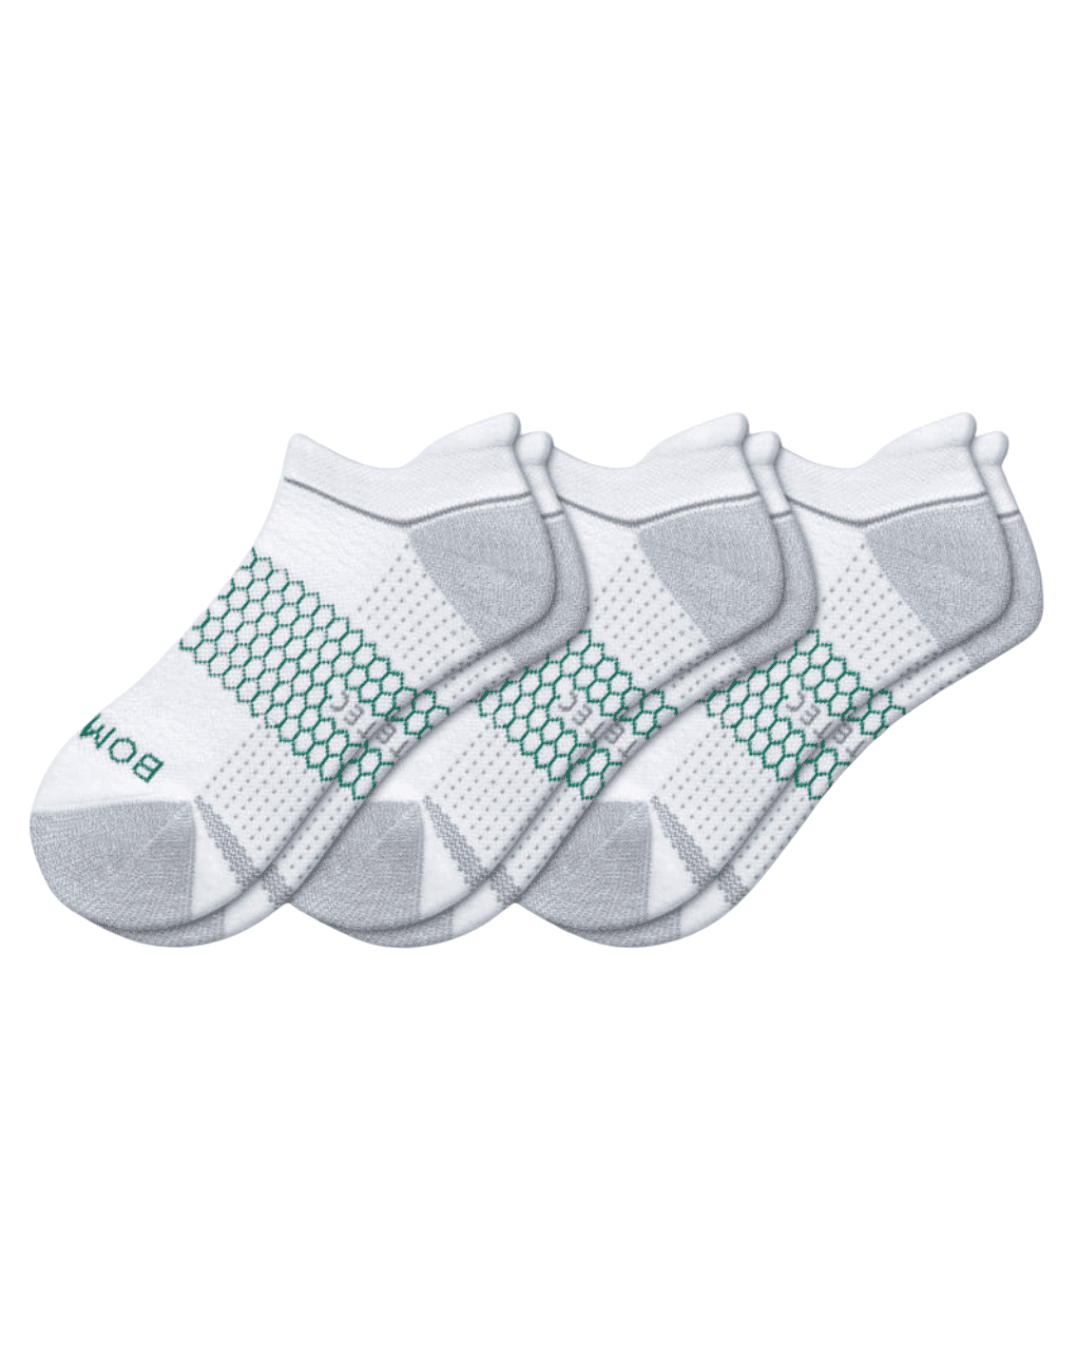 Men’s Performance Golf Ankle Sock 3-Pack